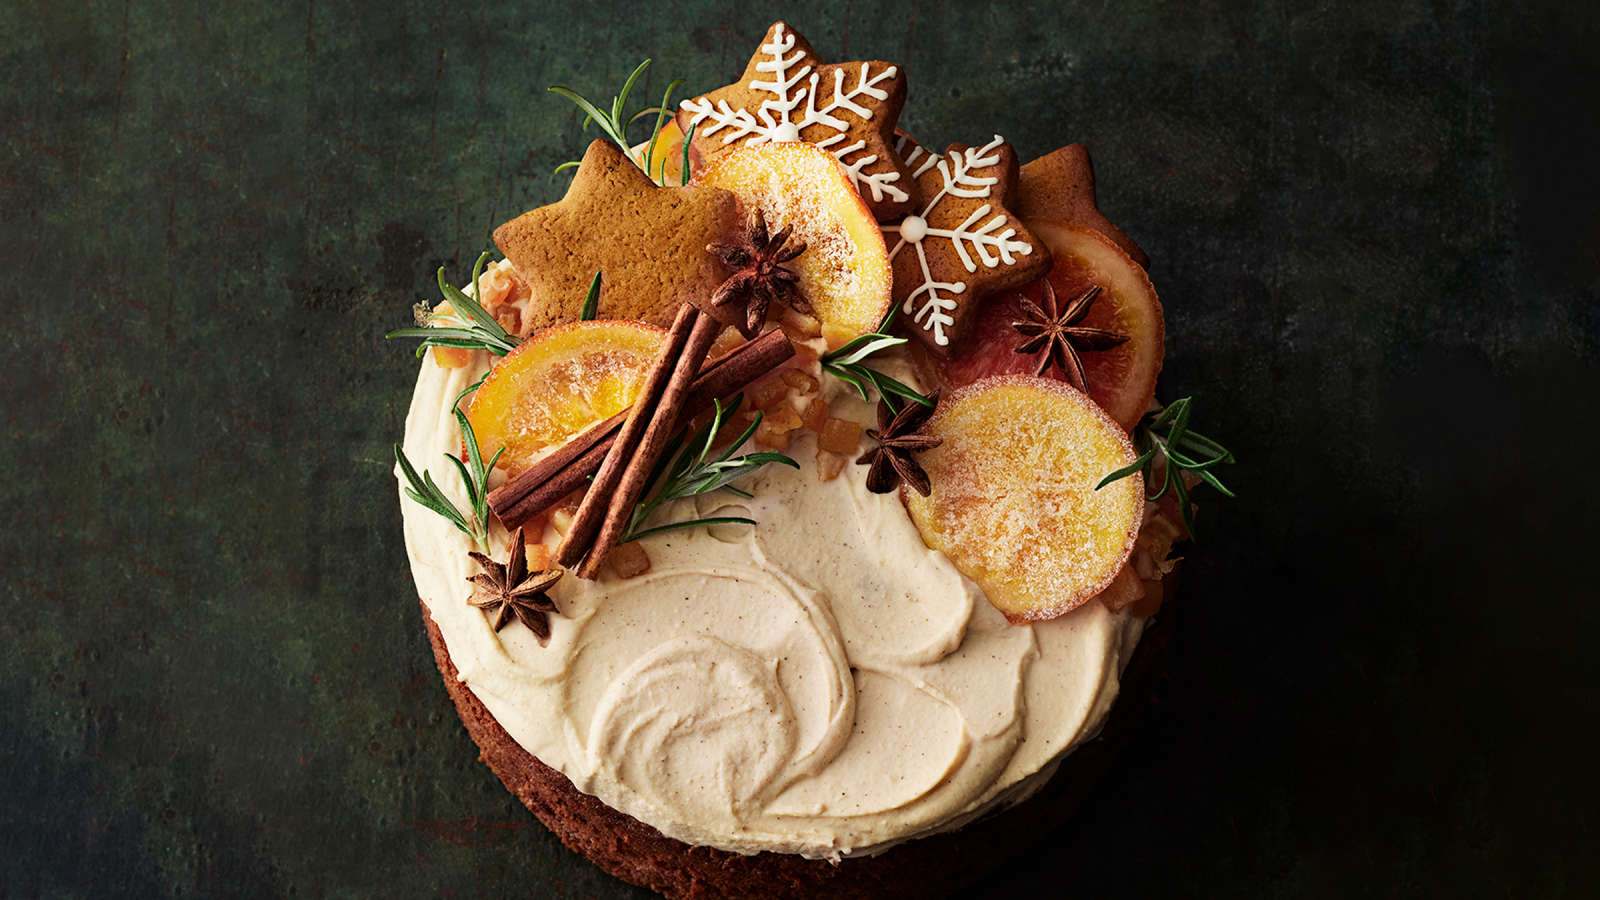 Englantilainen hedelmäkakku tuorejuustovaahdolla kuorrutettuna. Kakku on koristeltu kanelitangoilla, kandeeratuilla appelsiineilla, piparkakuilla, tähtianiksilla ja rosmariinitupsuilla.